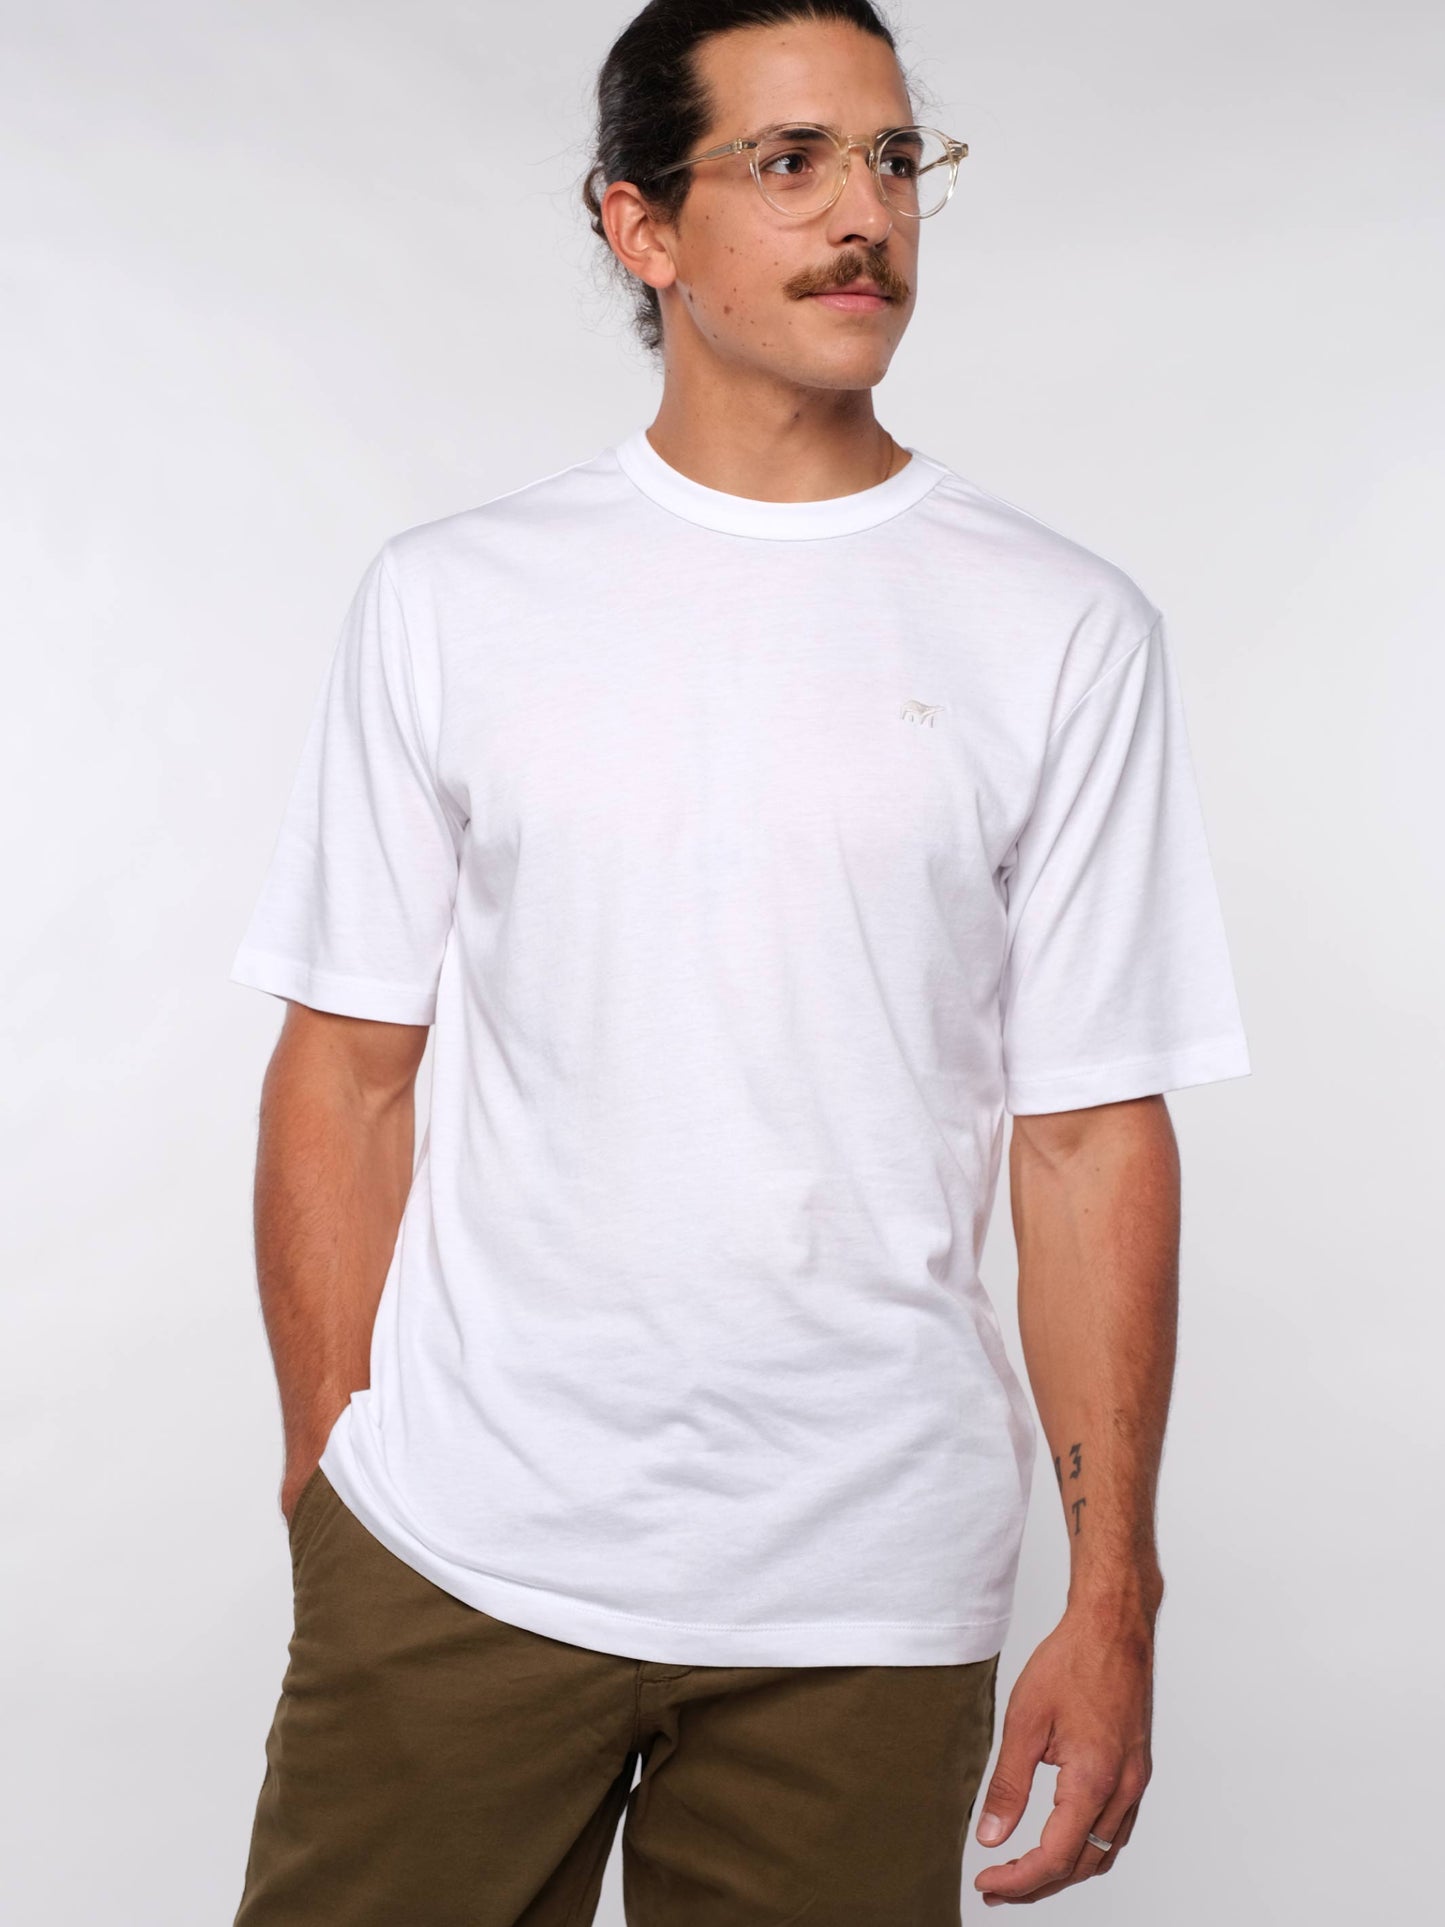 Herren T-Shirt LOGOBÄR (weiß)